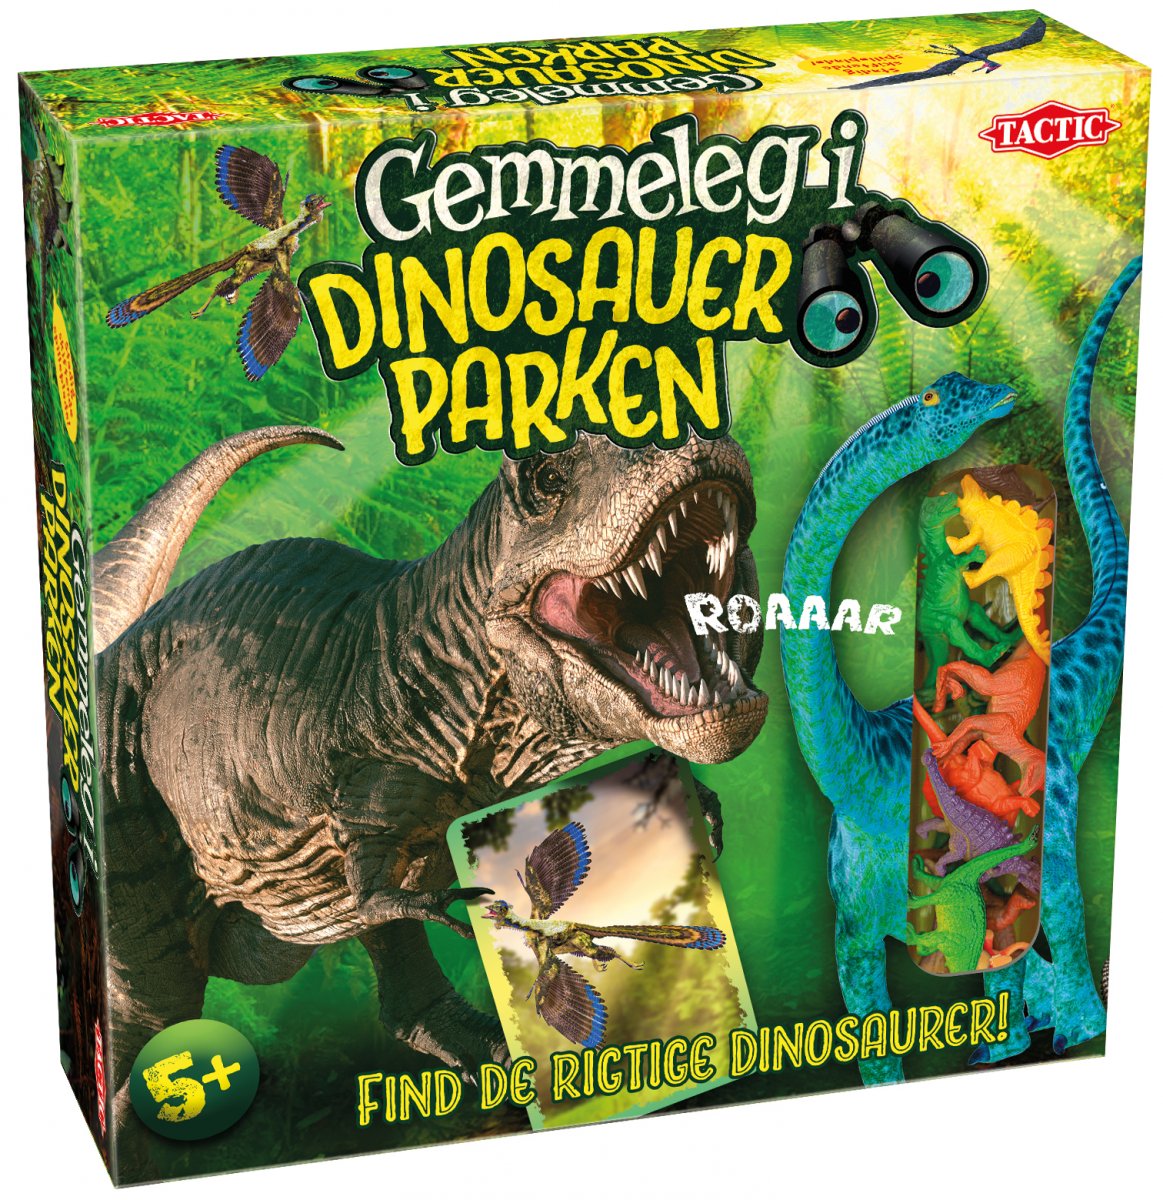 Se Gemmeleg i Dinosauer Parken hos SpilCompagniet